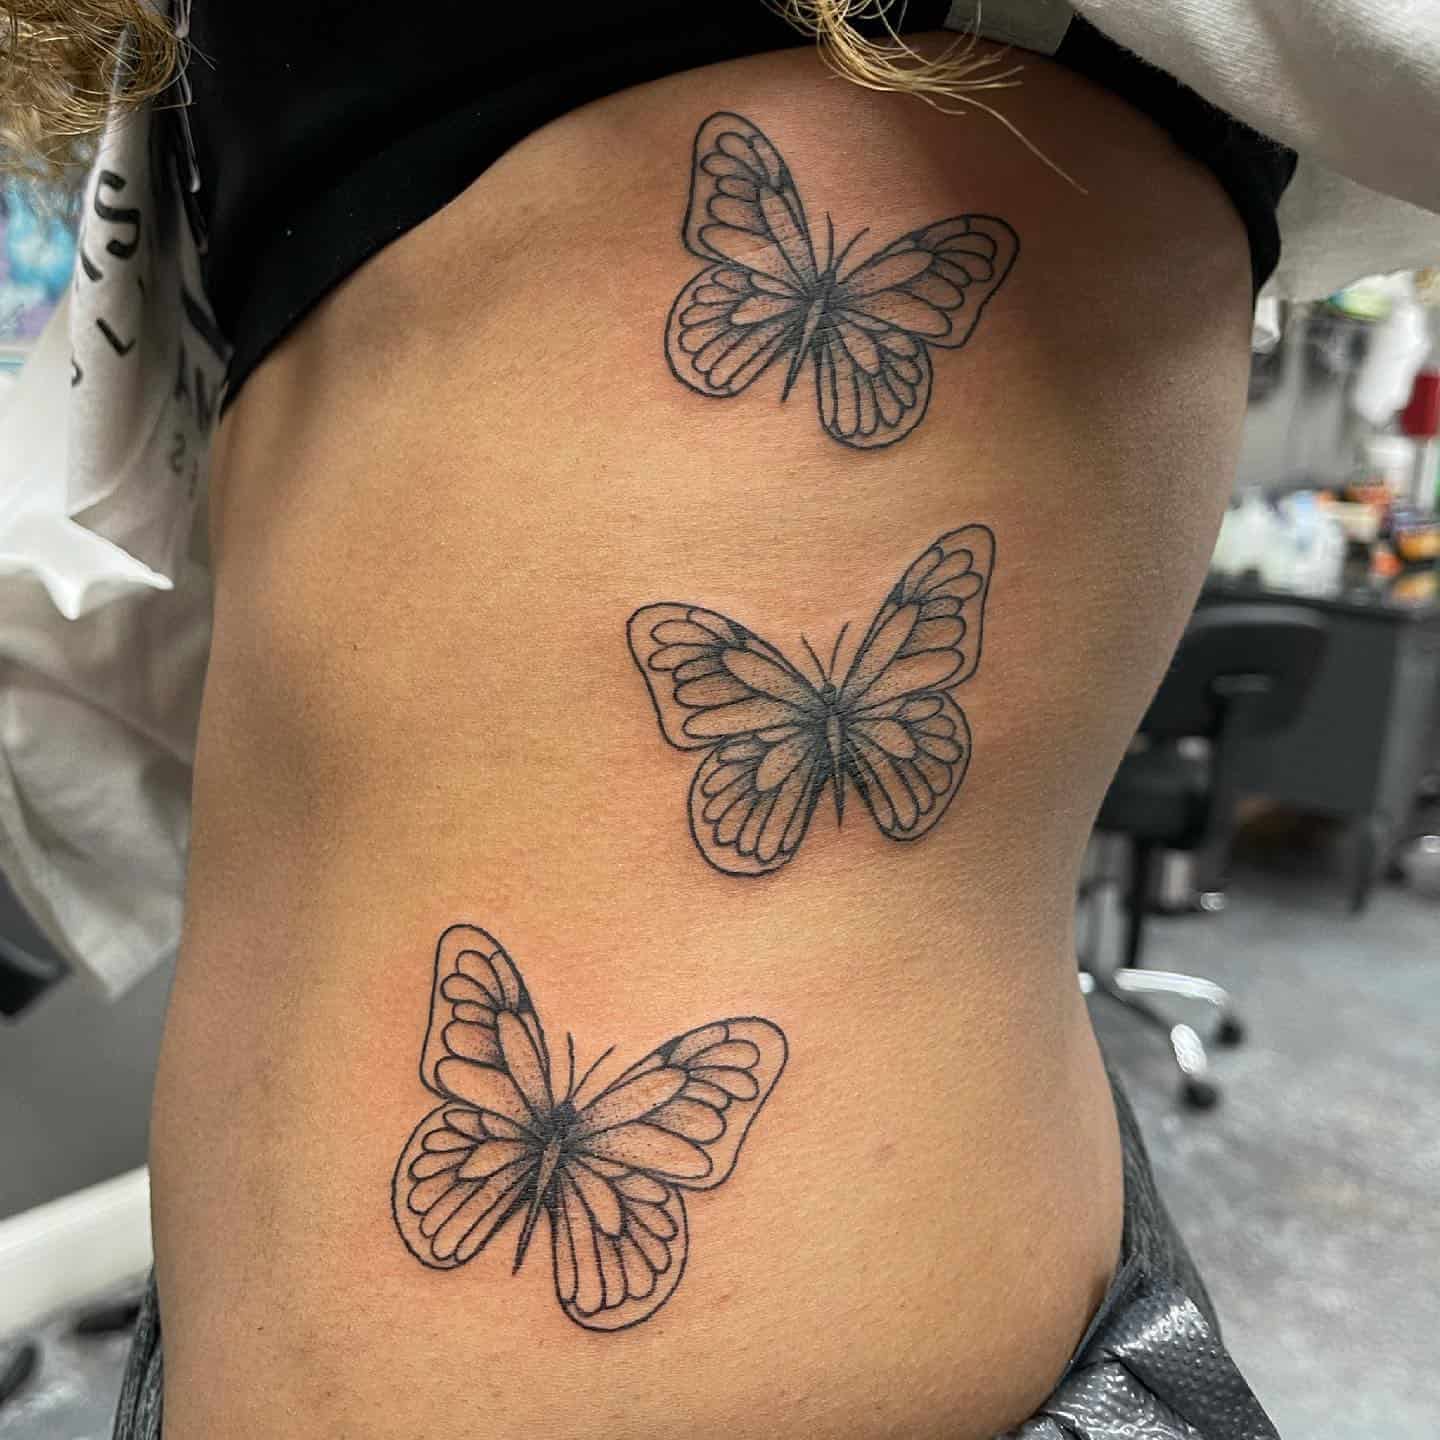 Butterfly side tattoo 3